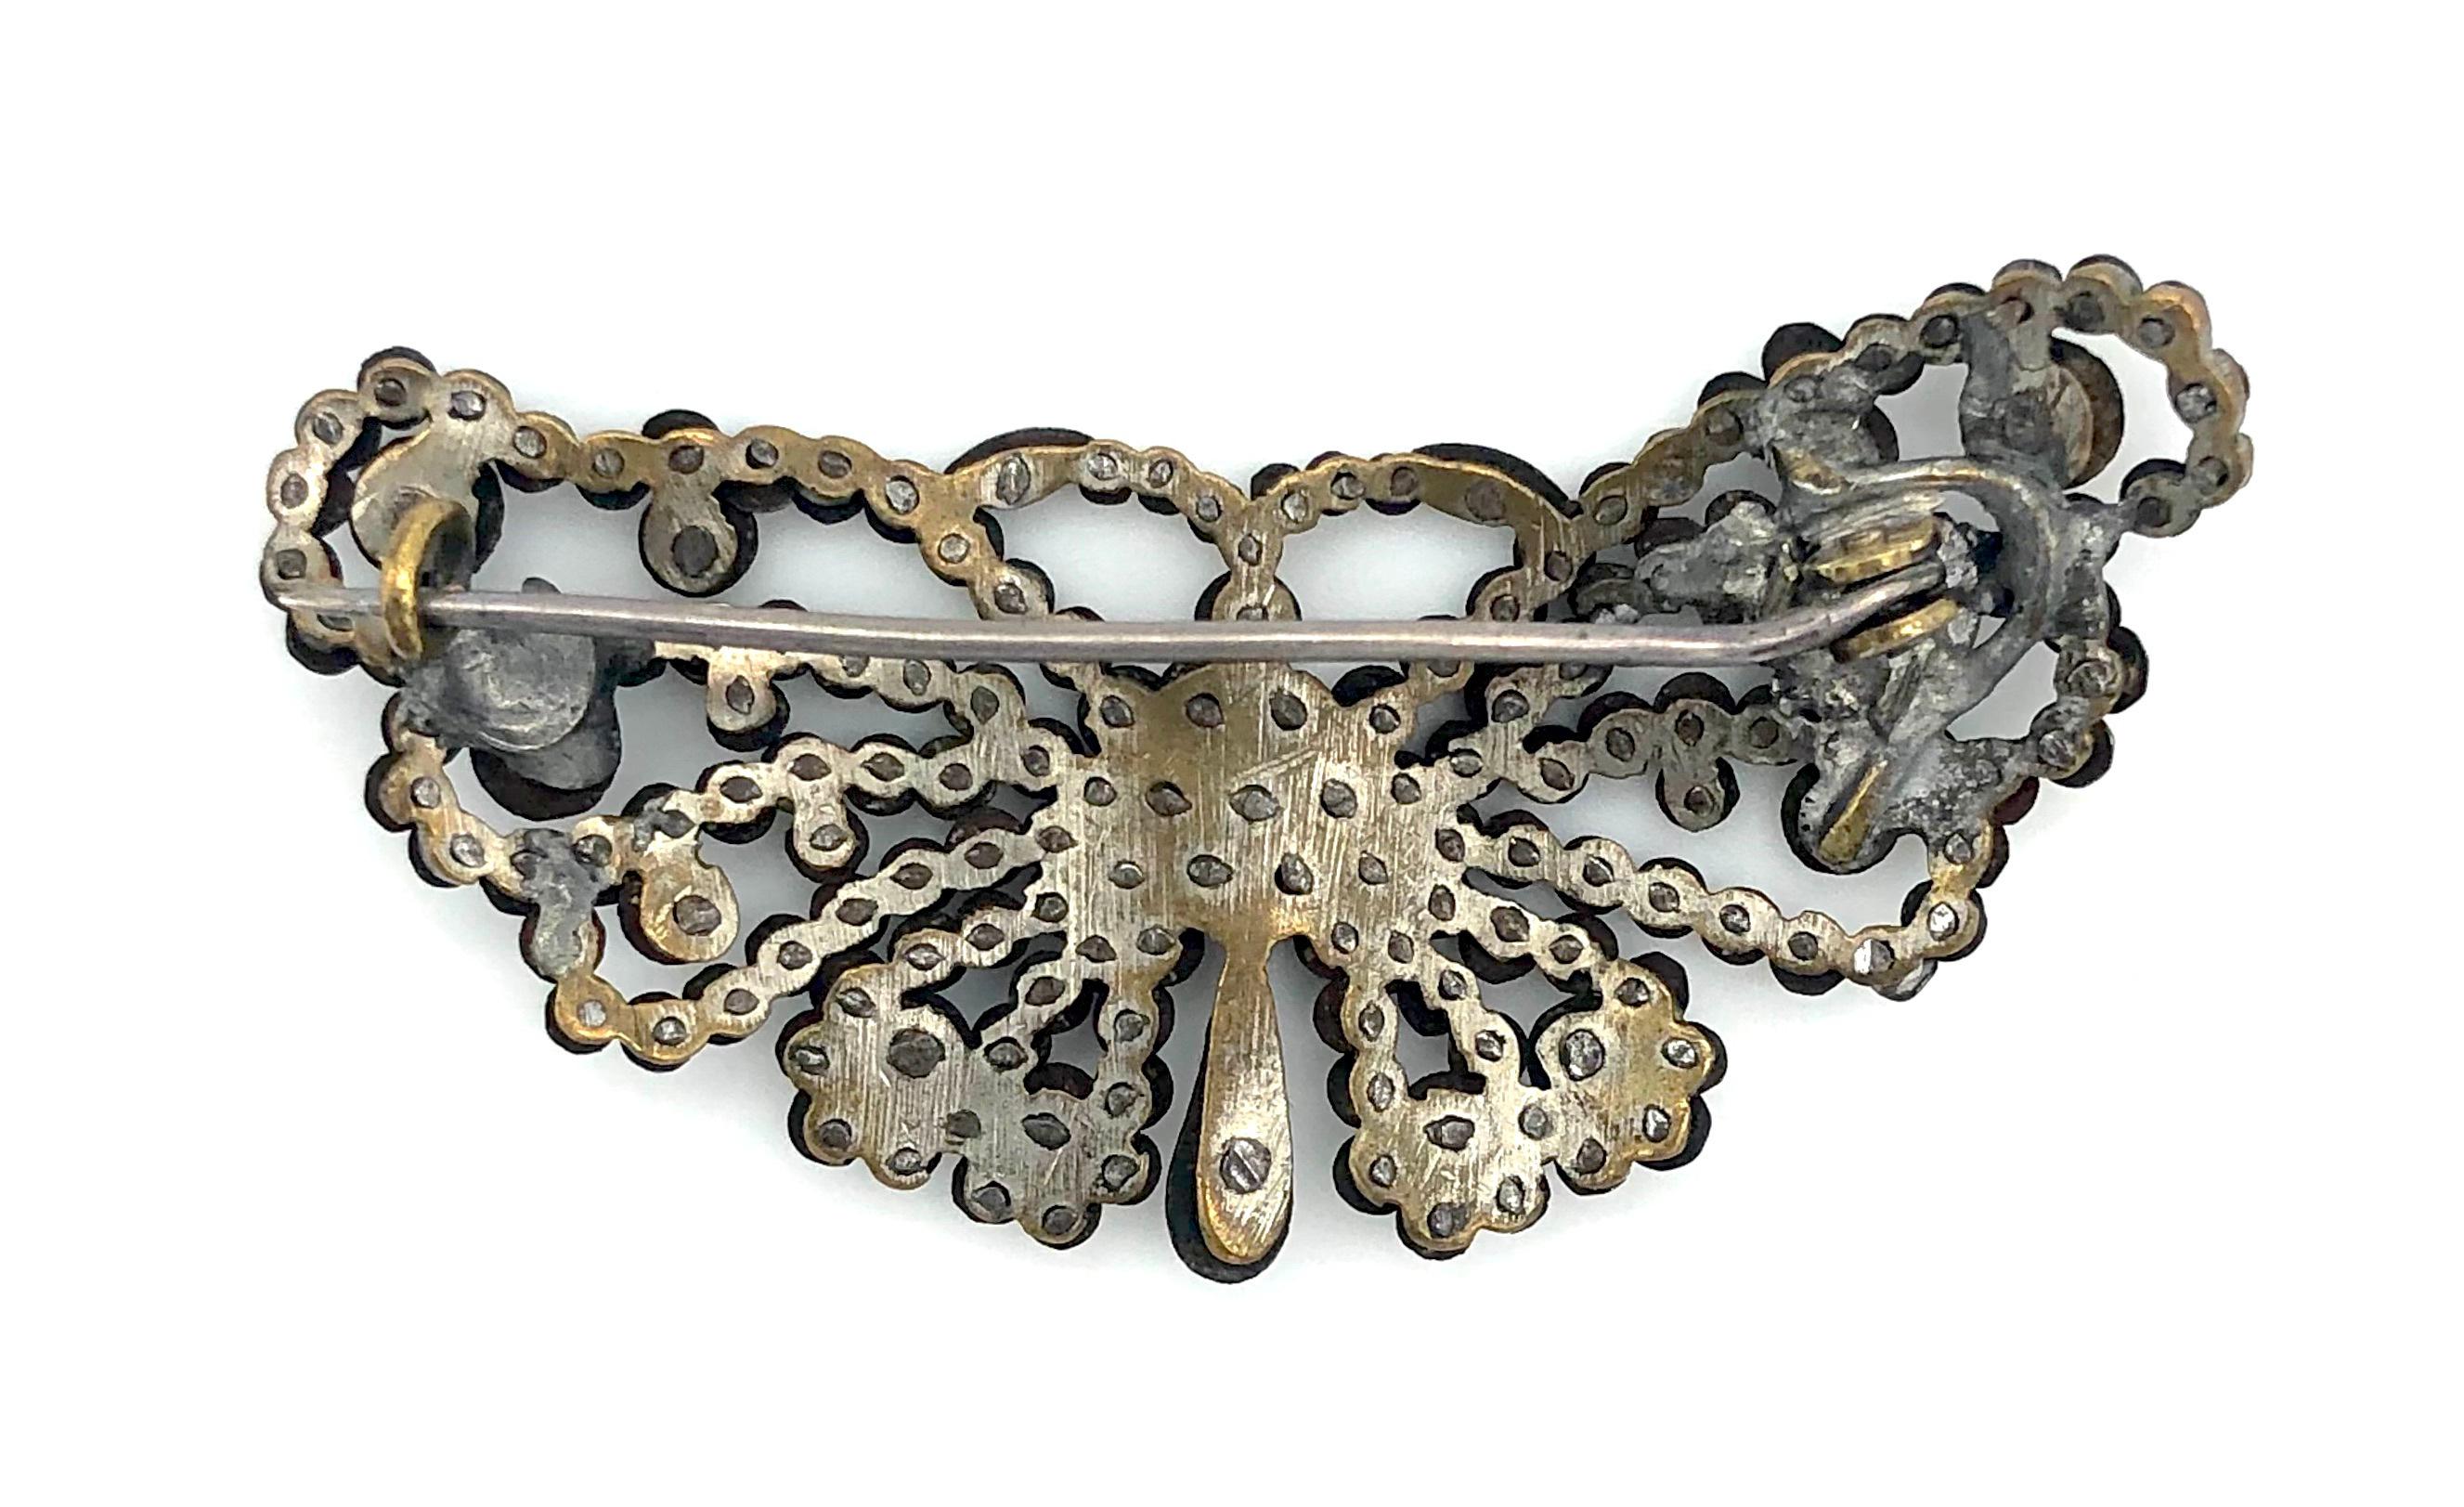 Diese charmante kleine Brosche in Form eines Schmetterlings wurde um 1830 aus polierten Stahlnägeln hergestellt, die auf einen Metallsockel genietet wurden.